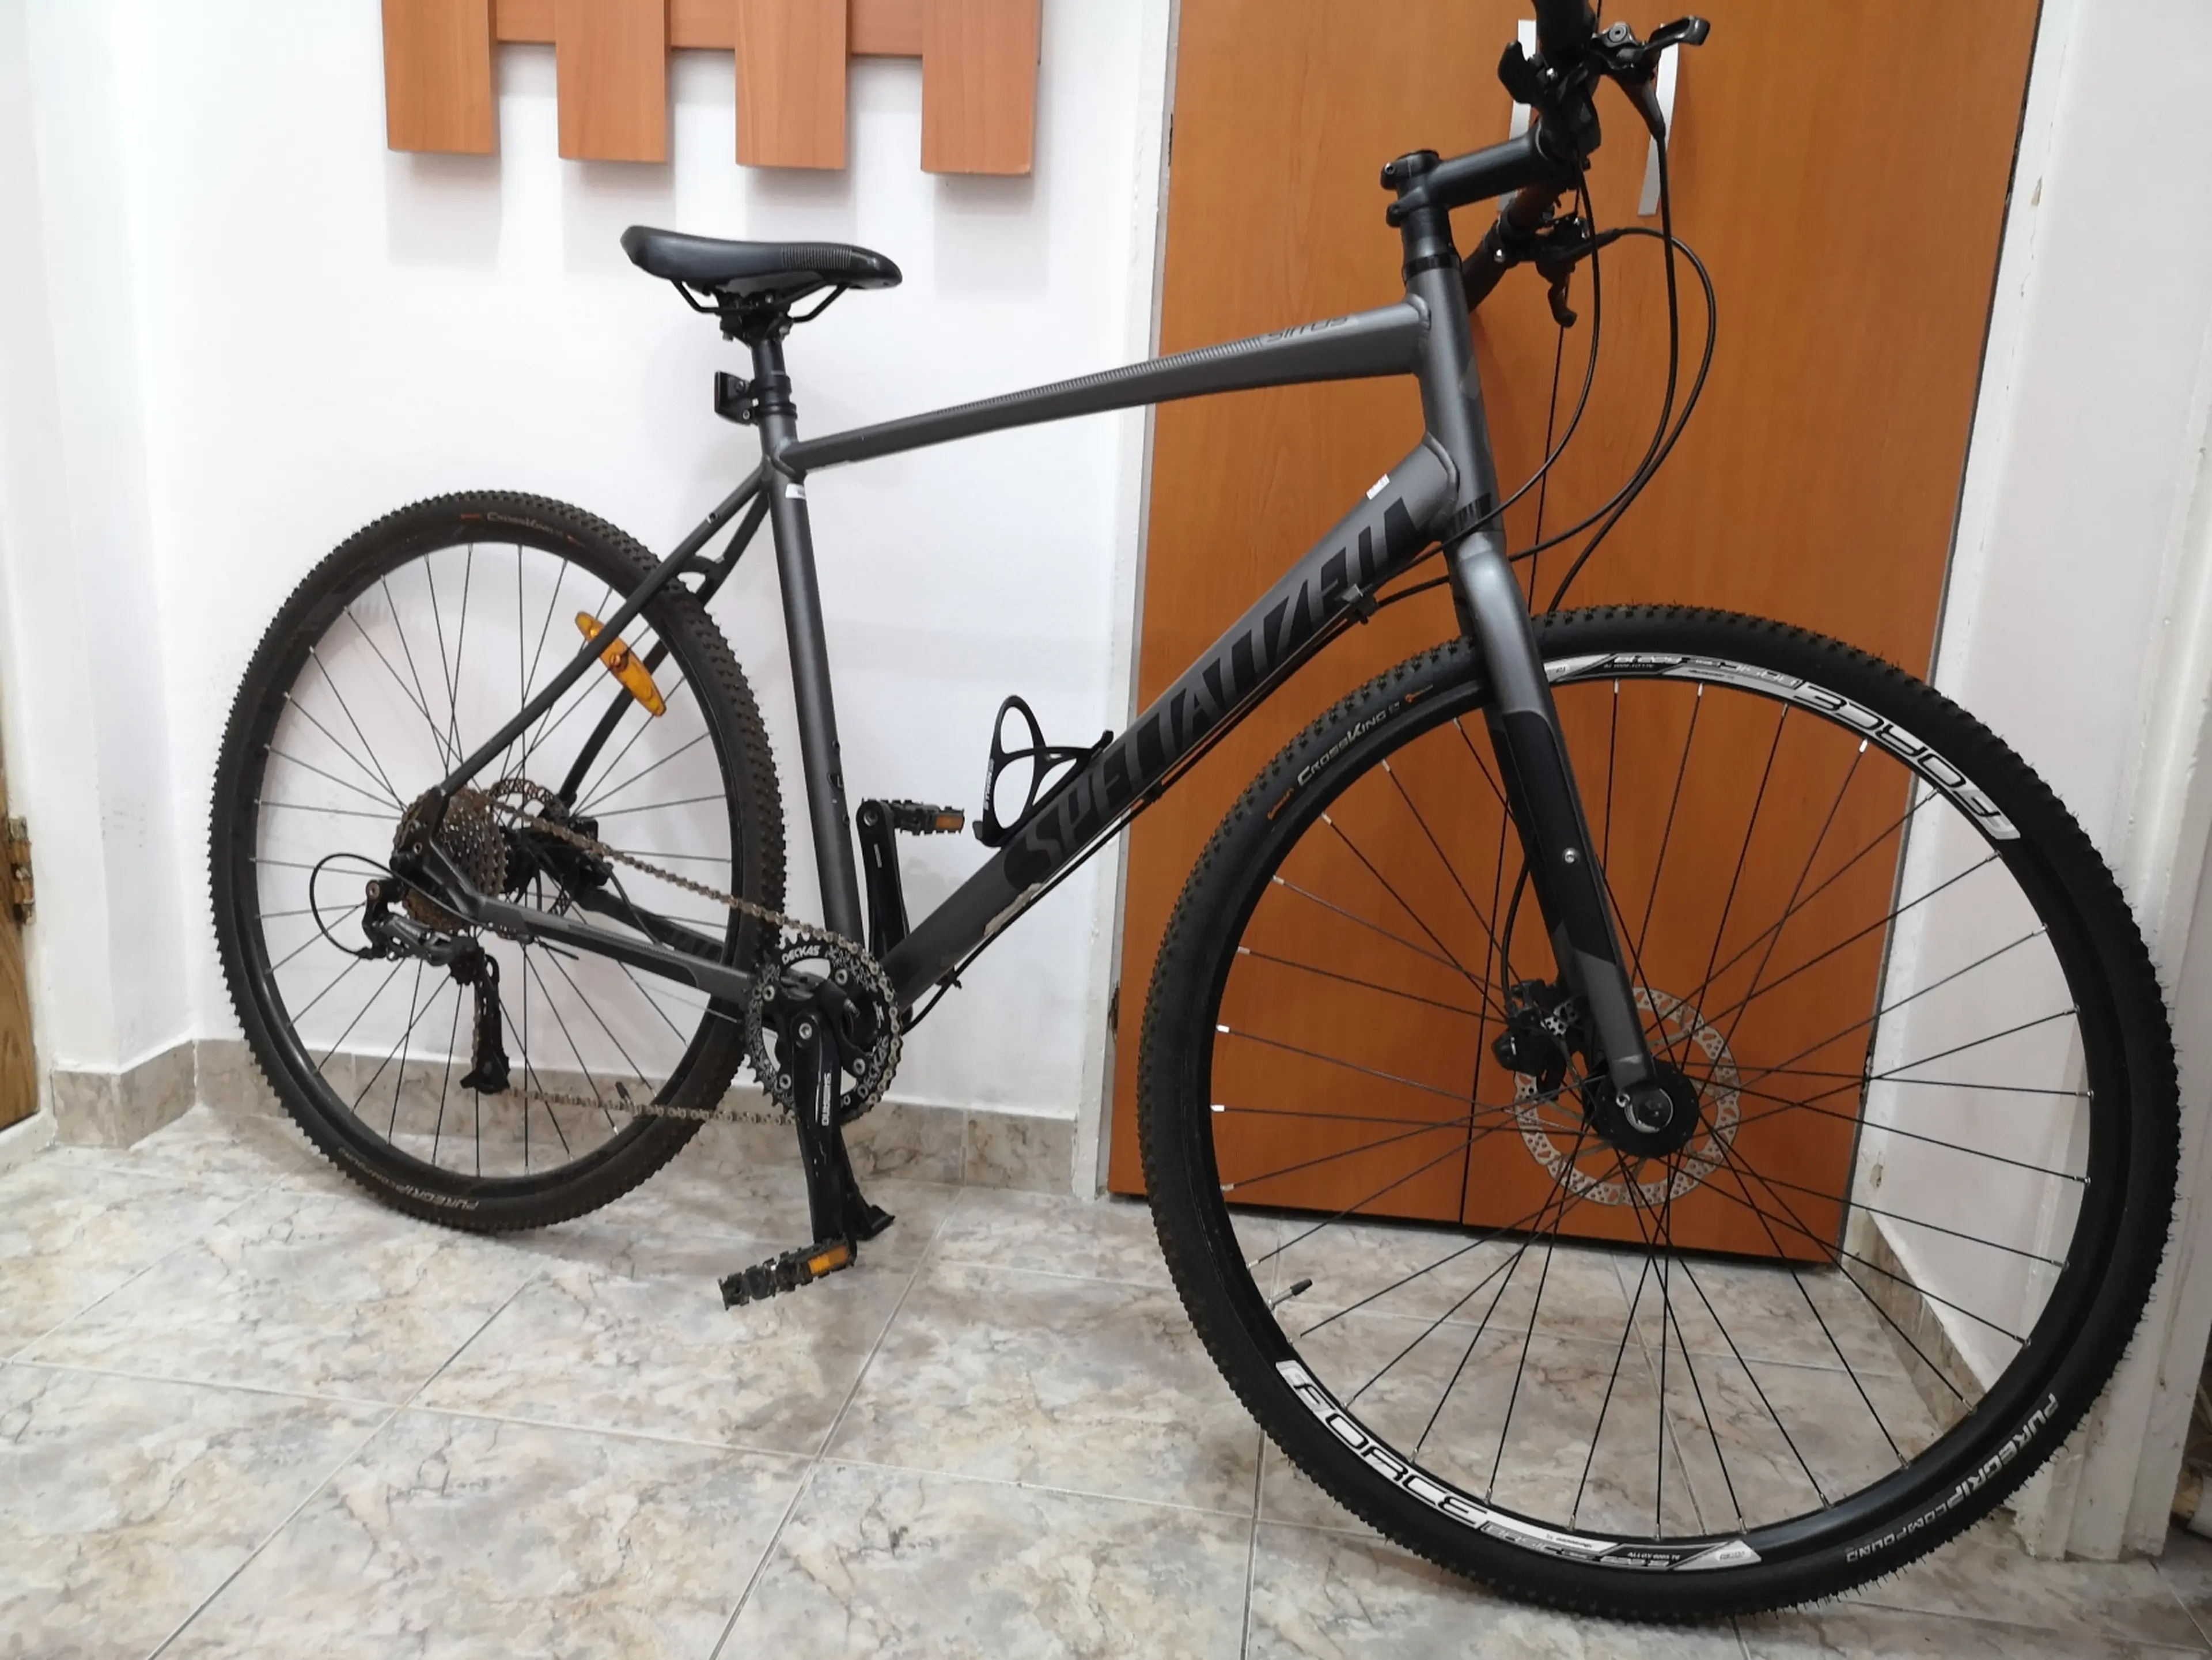 4. Specialized Sirrus Sport 2015/ City bike